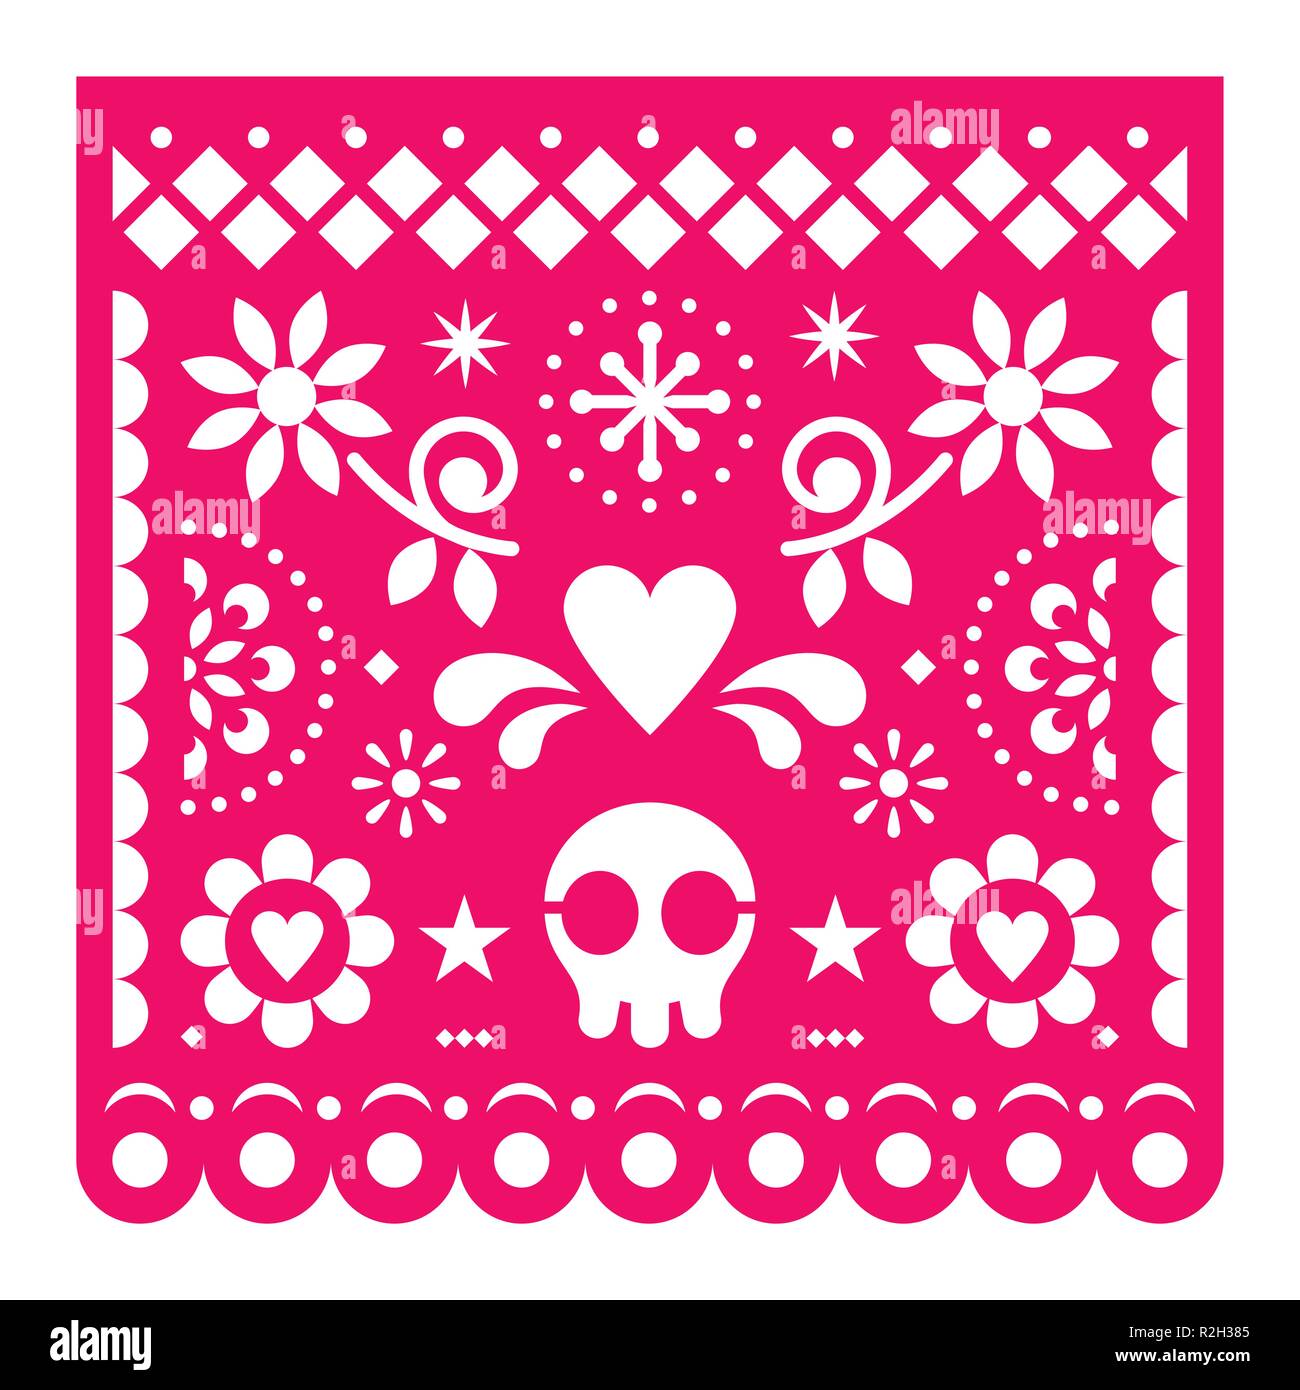 Mexican papel picado, vecteur conception papier rétro rose décoration fiesta du Mexique avec crâne, des fleurs et des formes géométriques découper le gabarit Illustration de Vecteur